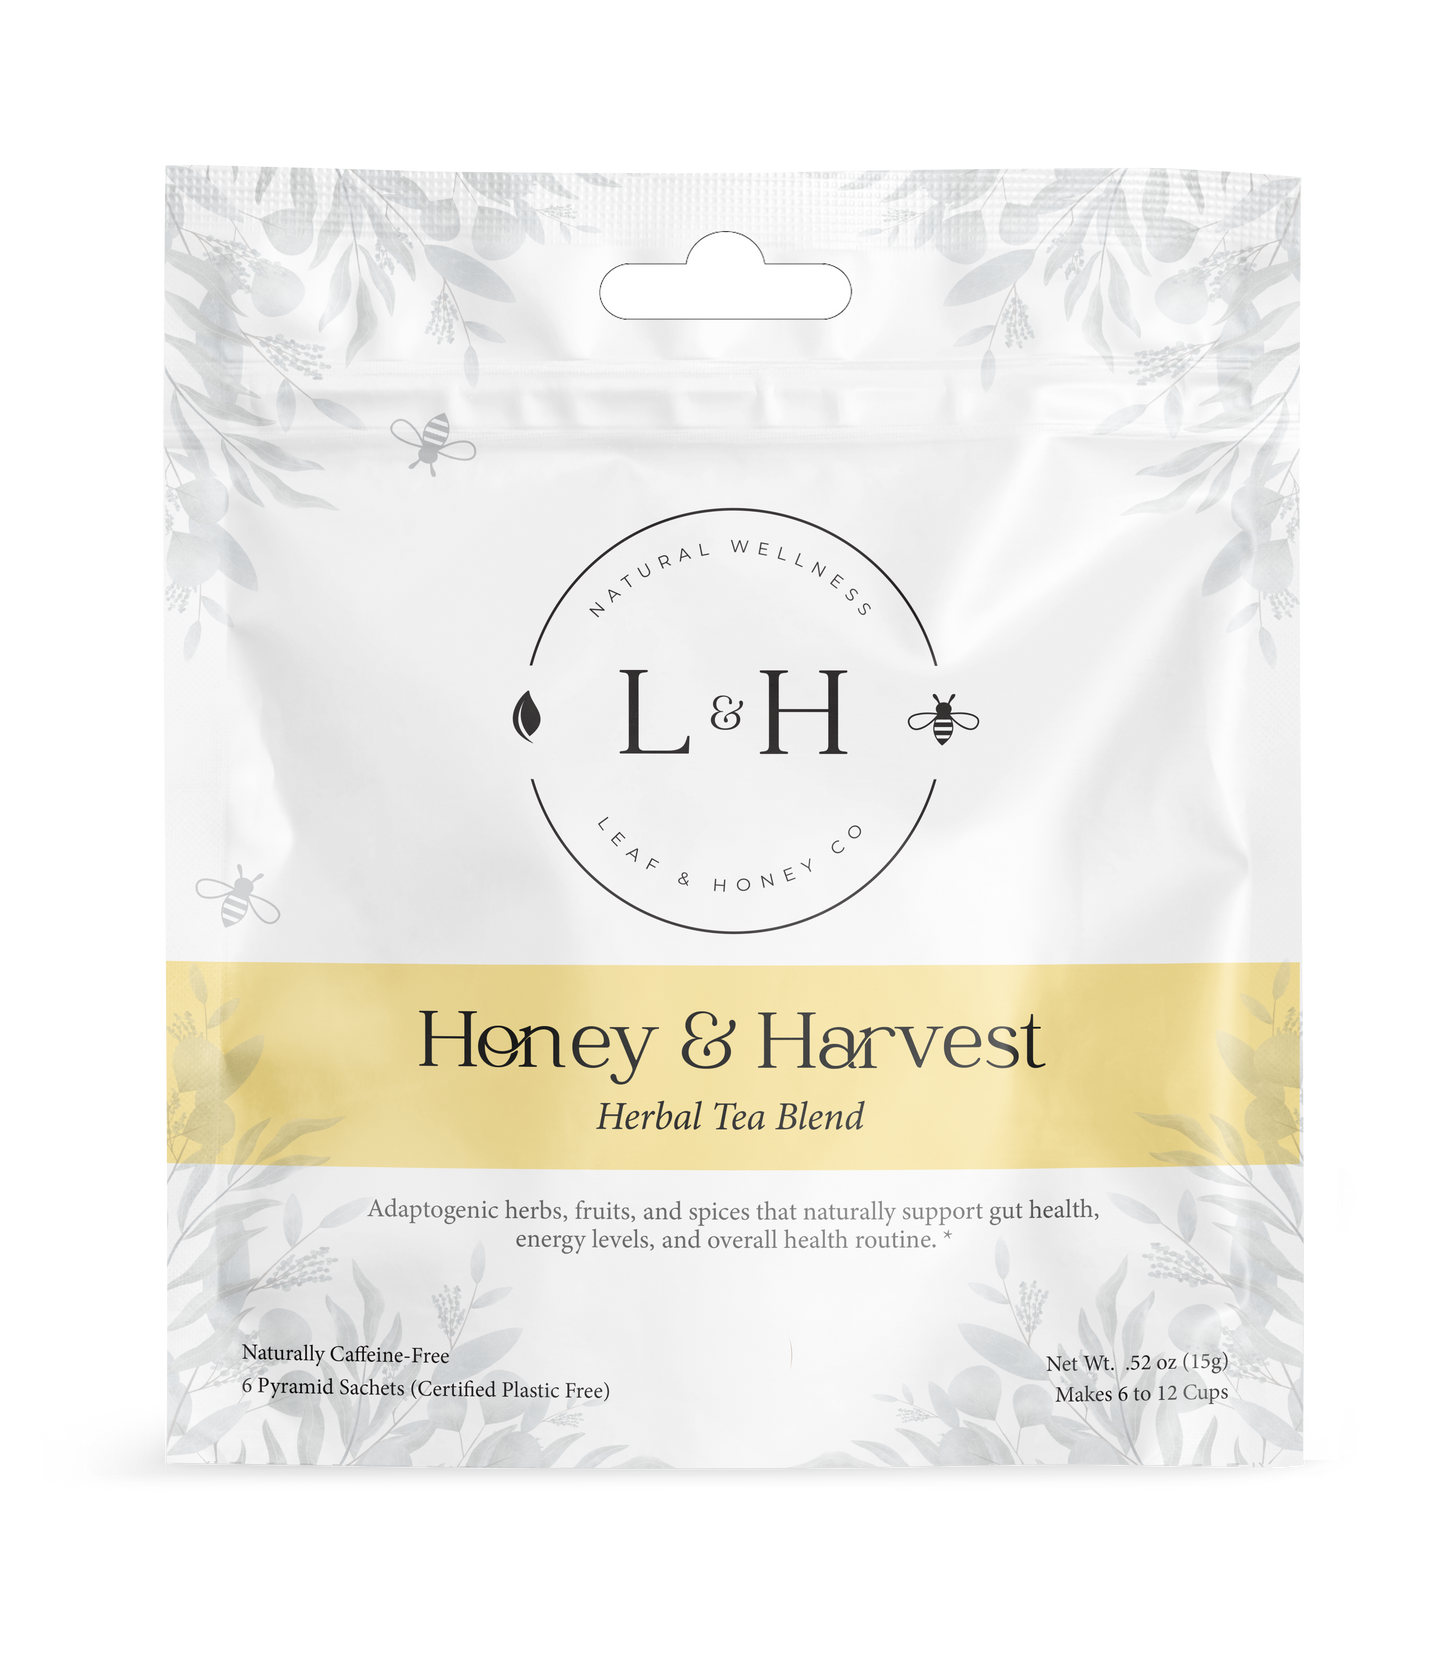 Honey & Harvest